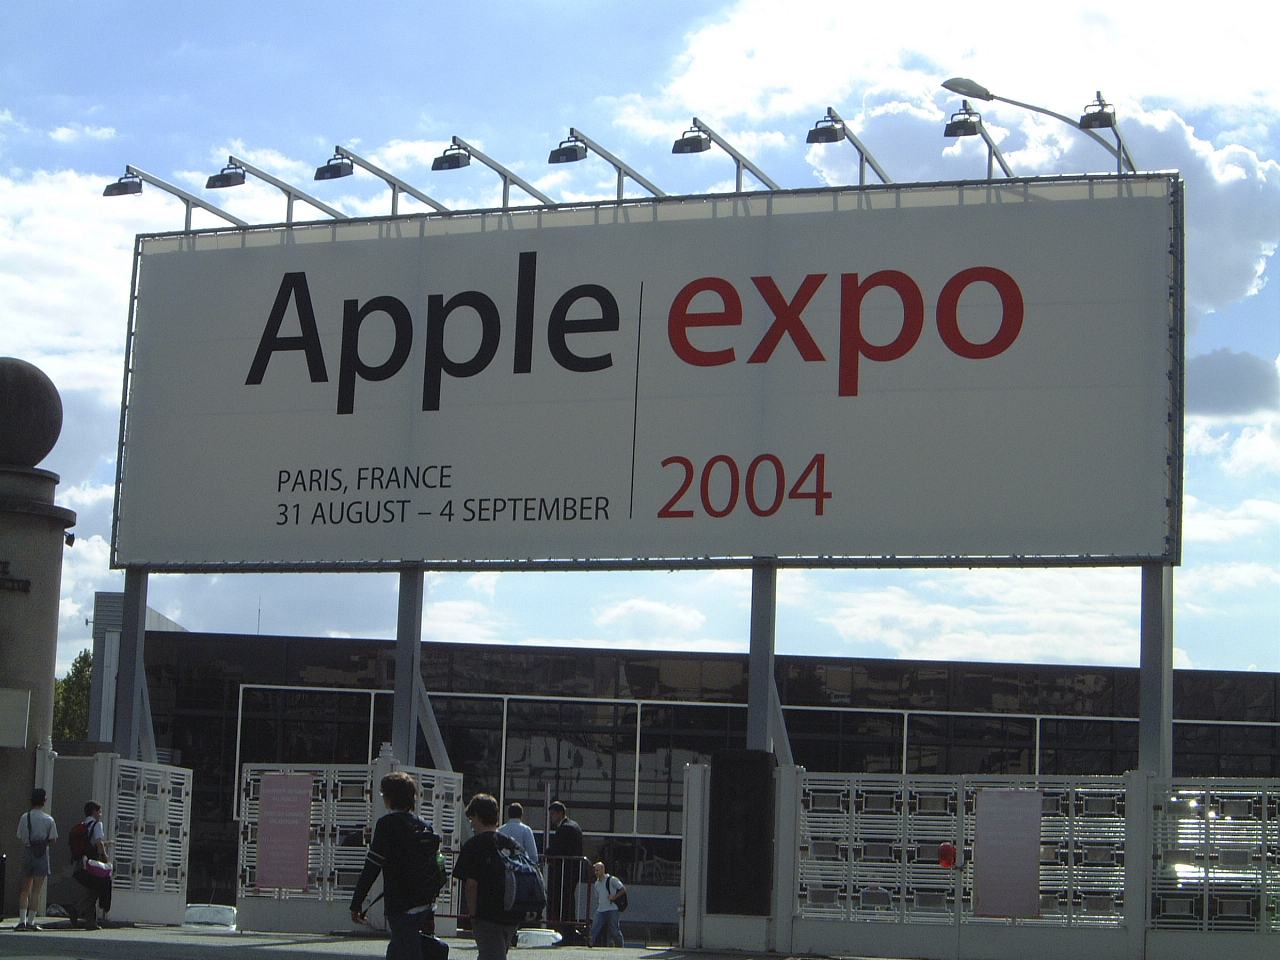 Apple Expo 2004